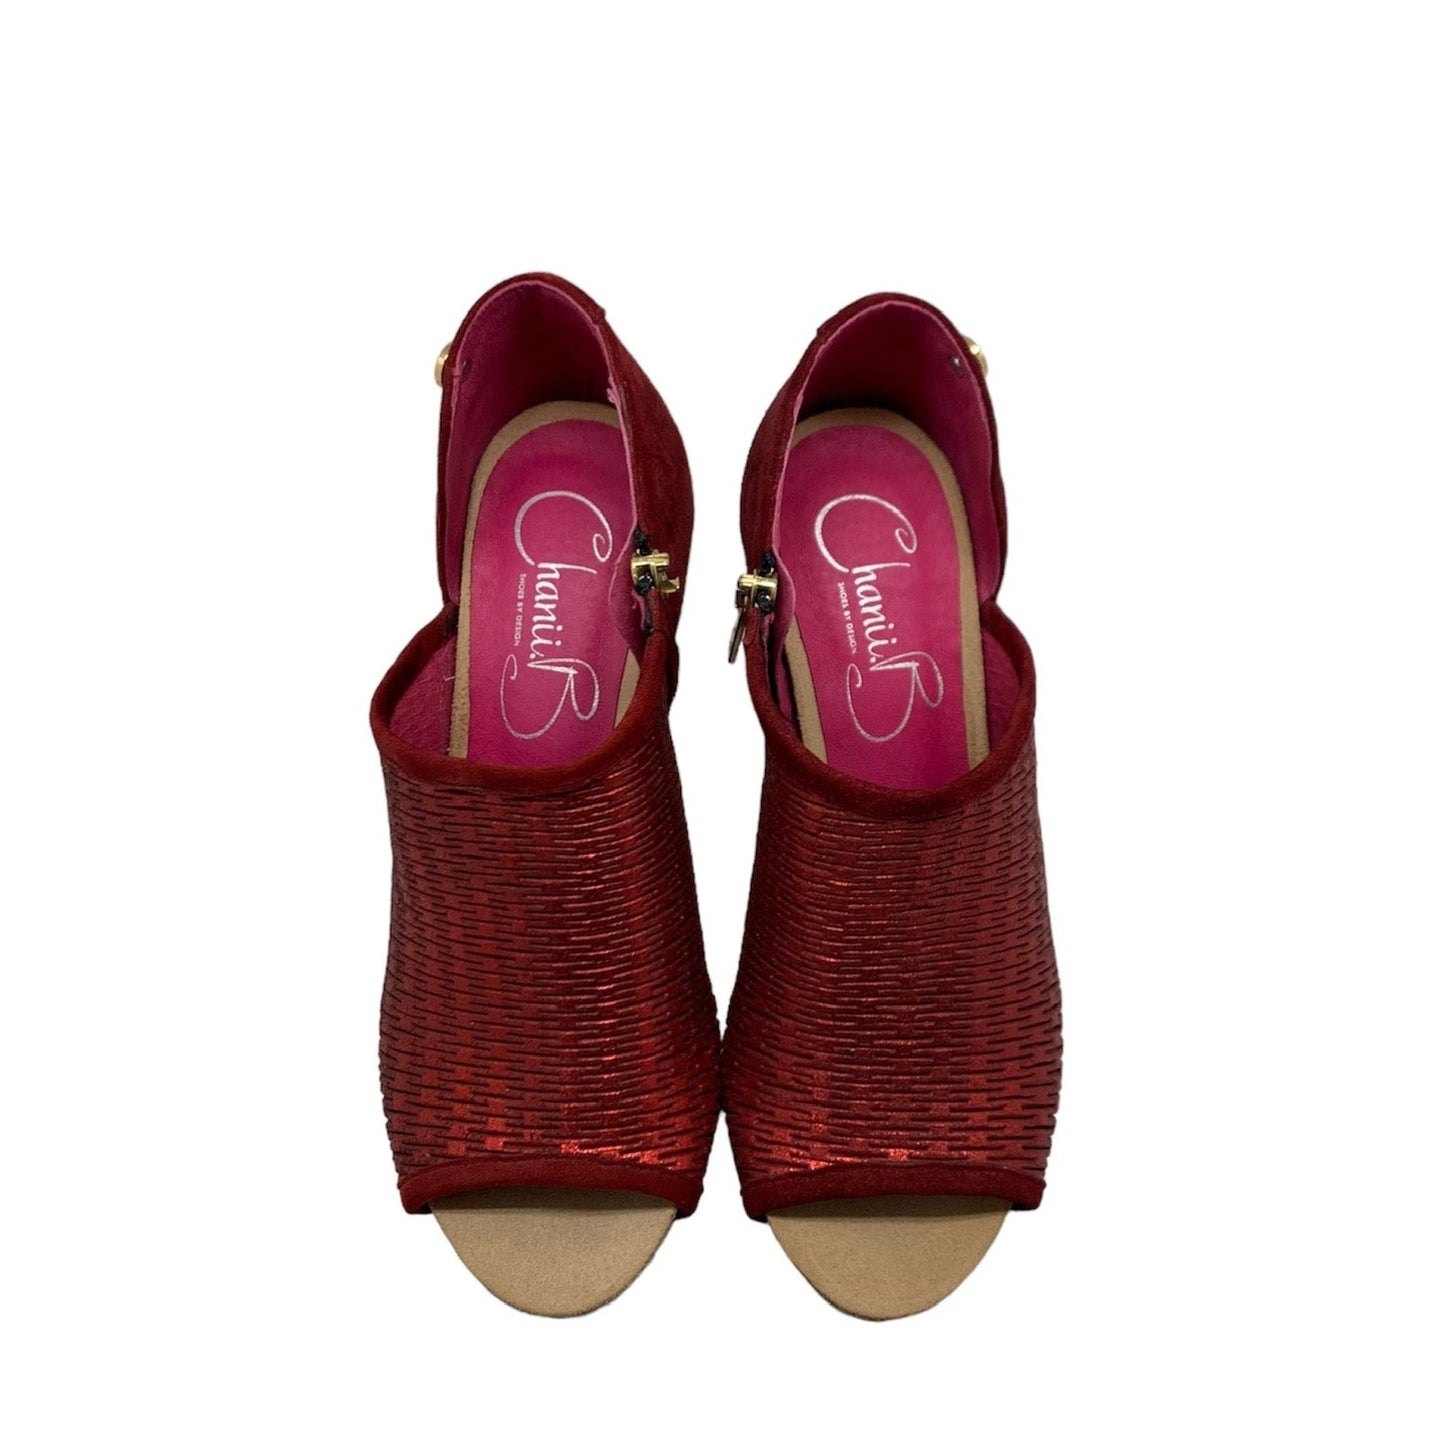 Parc -Ruby red open toe heel sandal